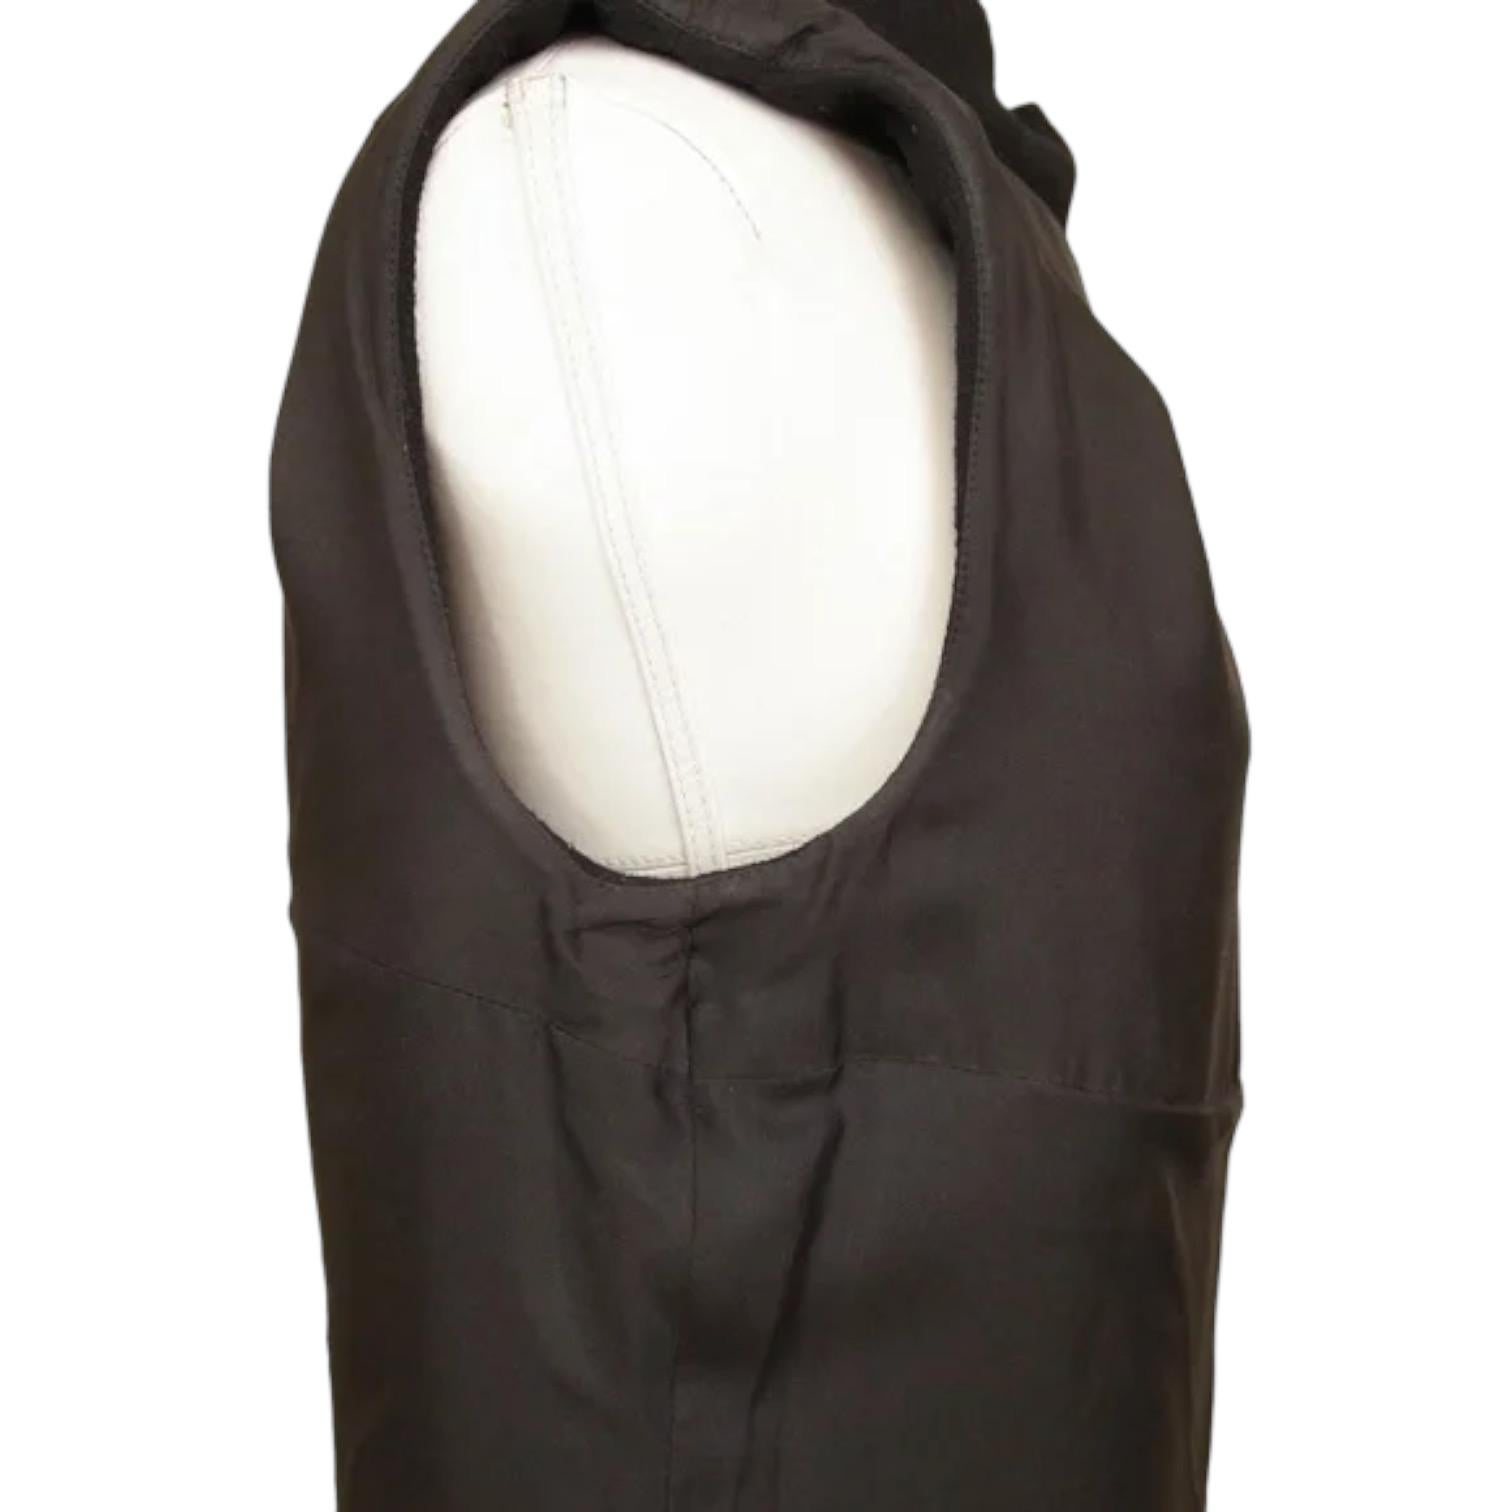 CHANEL Black Dress Sleeveless Shift Cowl Neck Cutout Wool Sz 40 Fall 2012 5